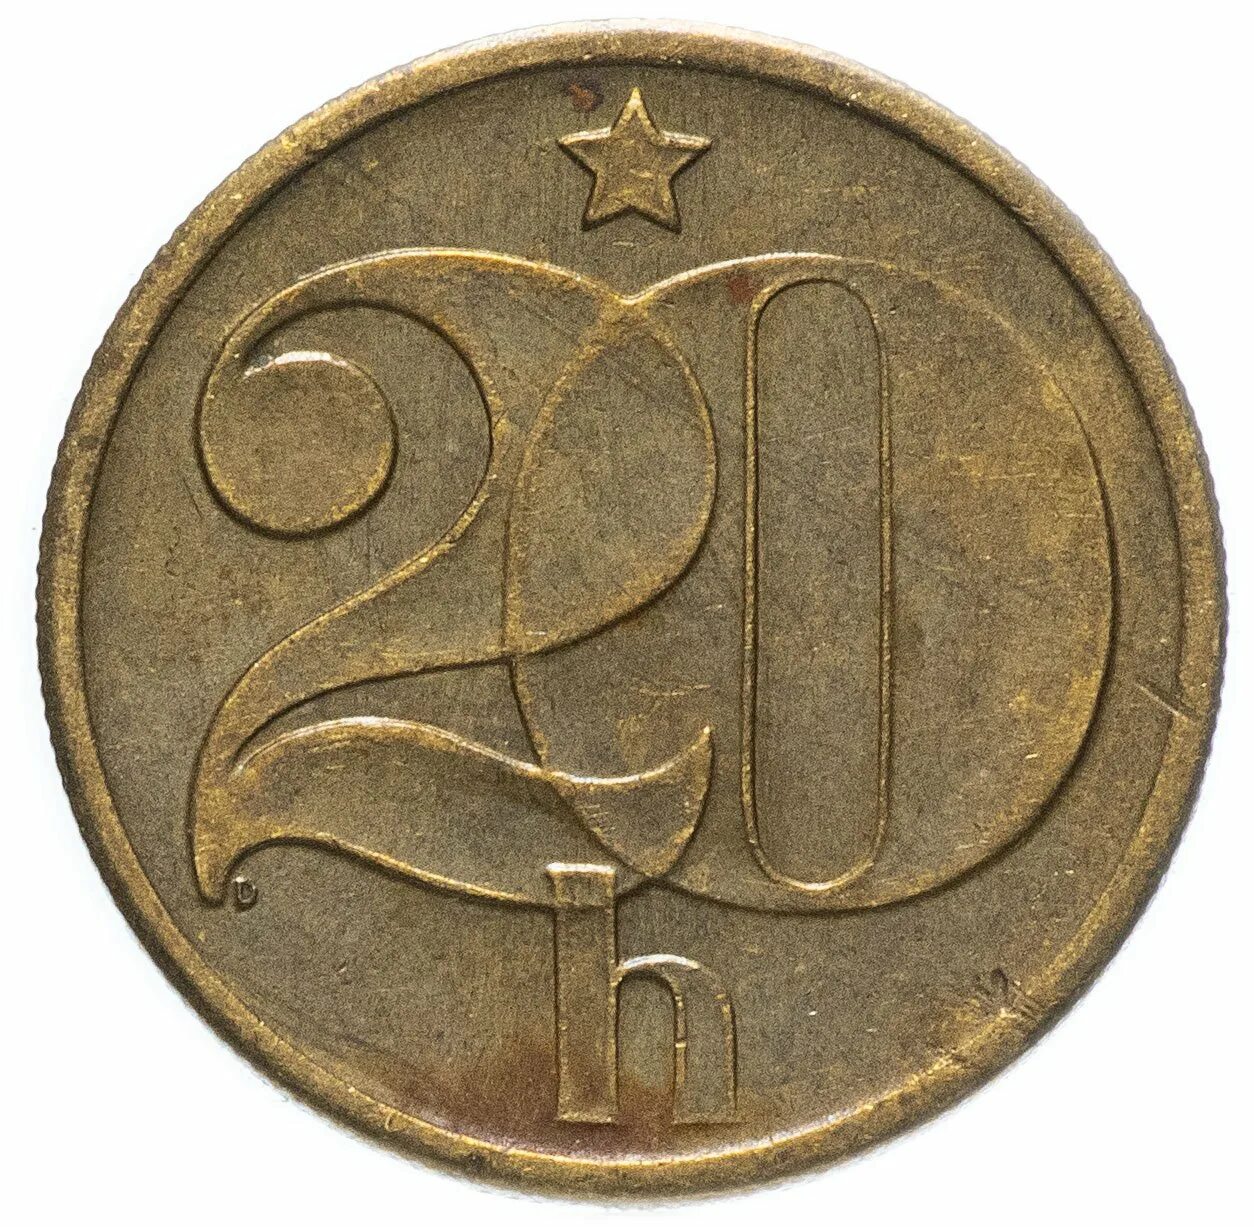 Купить в чехословакии. Чехословакия 20 геллеров 1975. Чехословакия 20 геллеров 1977. Монеты Чехословакии 20. Чехословенская монета 1982.